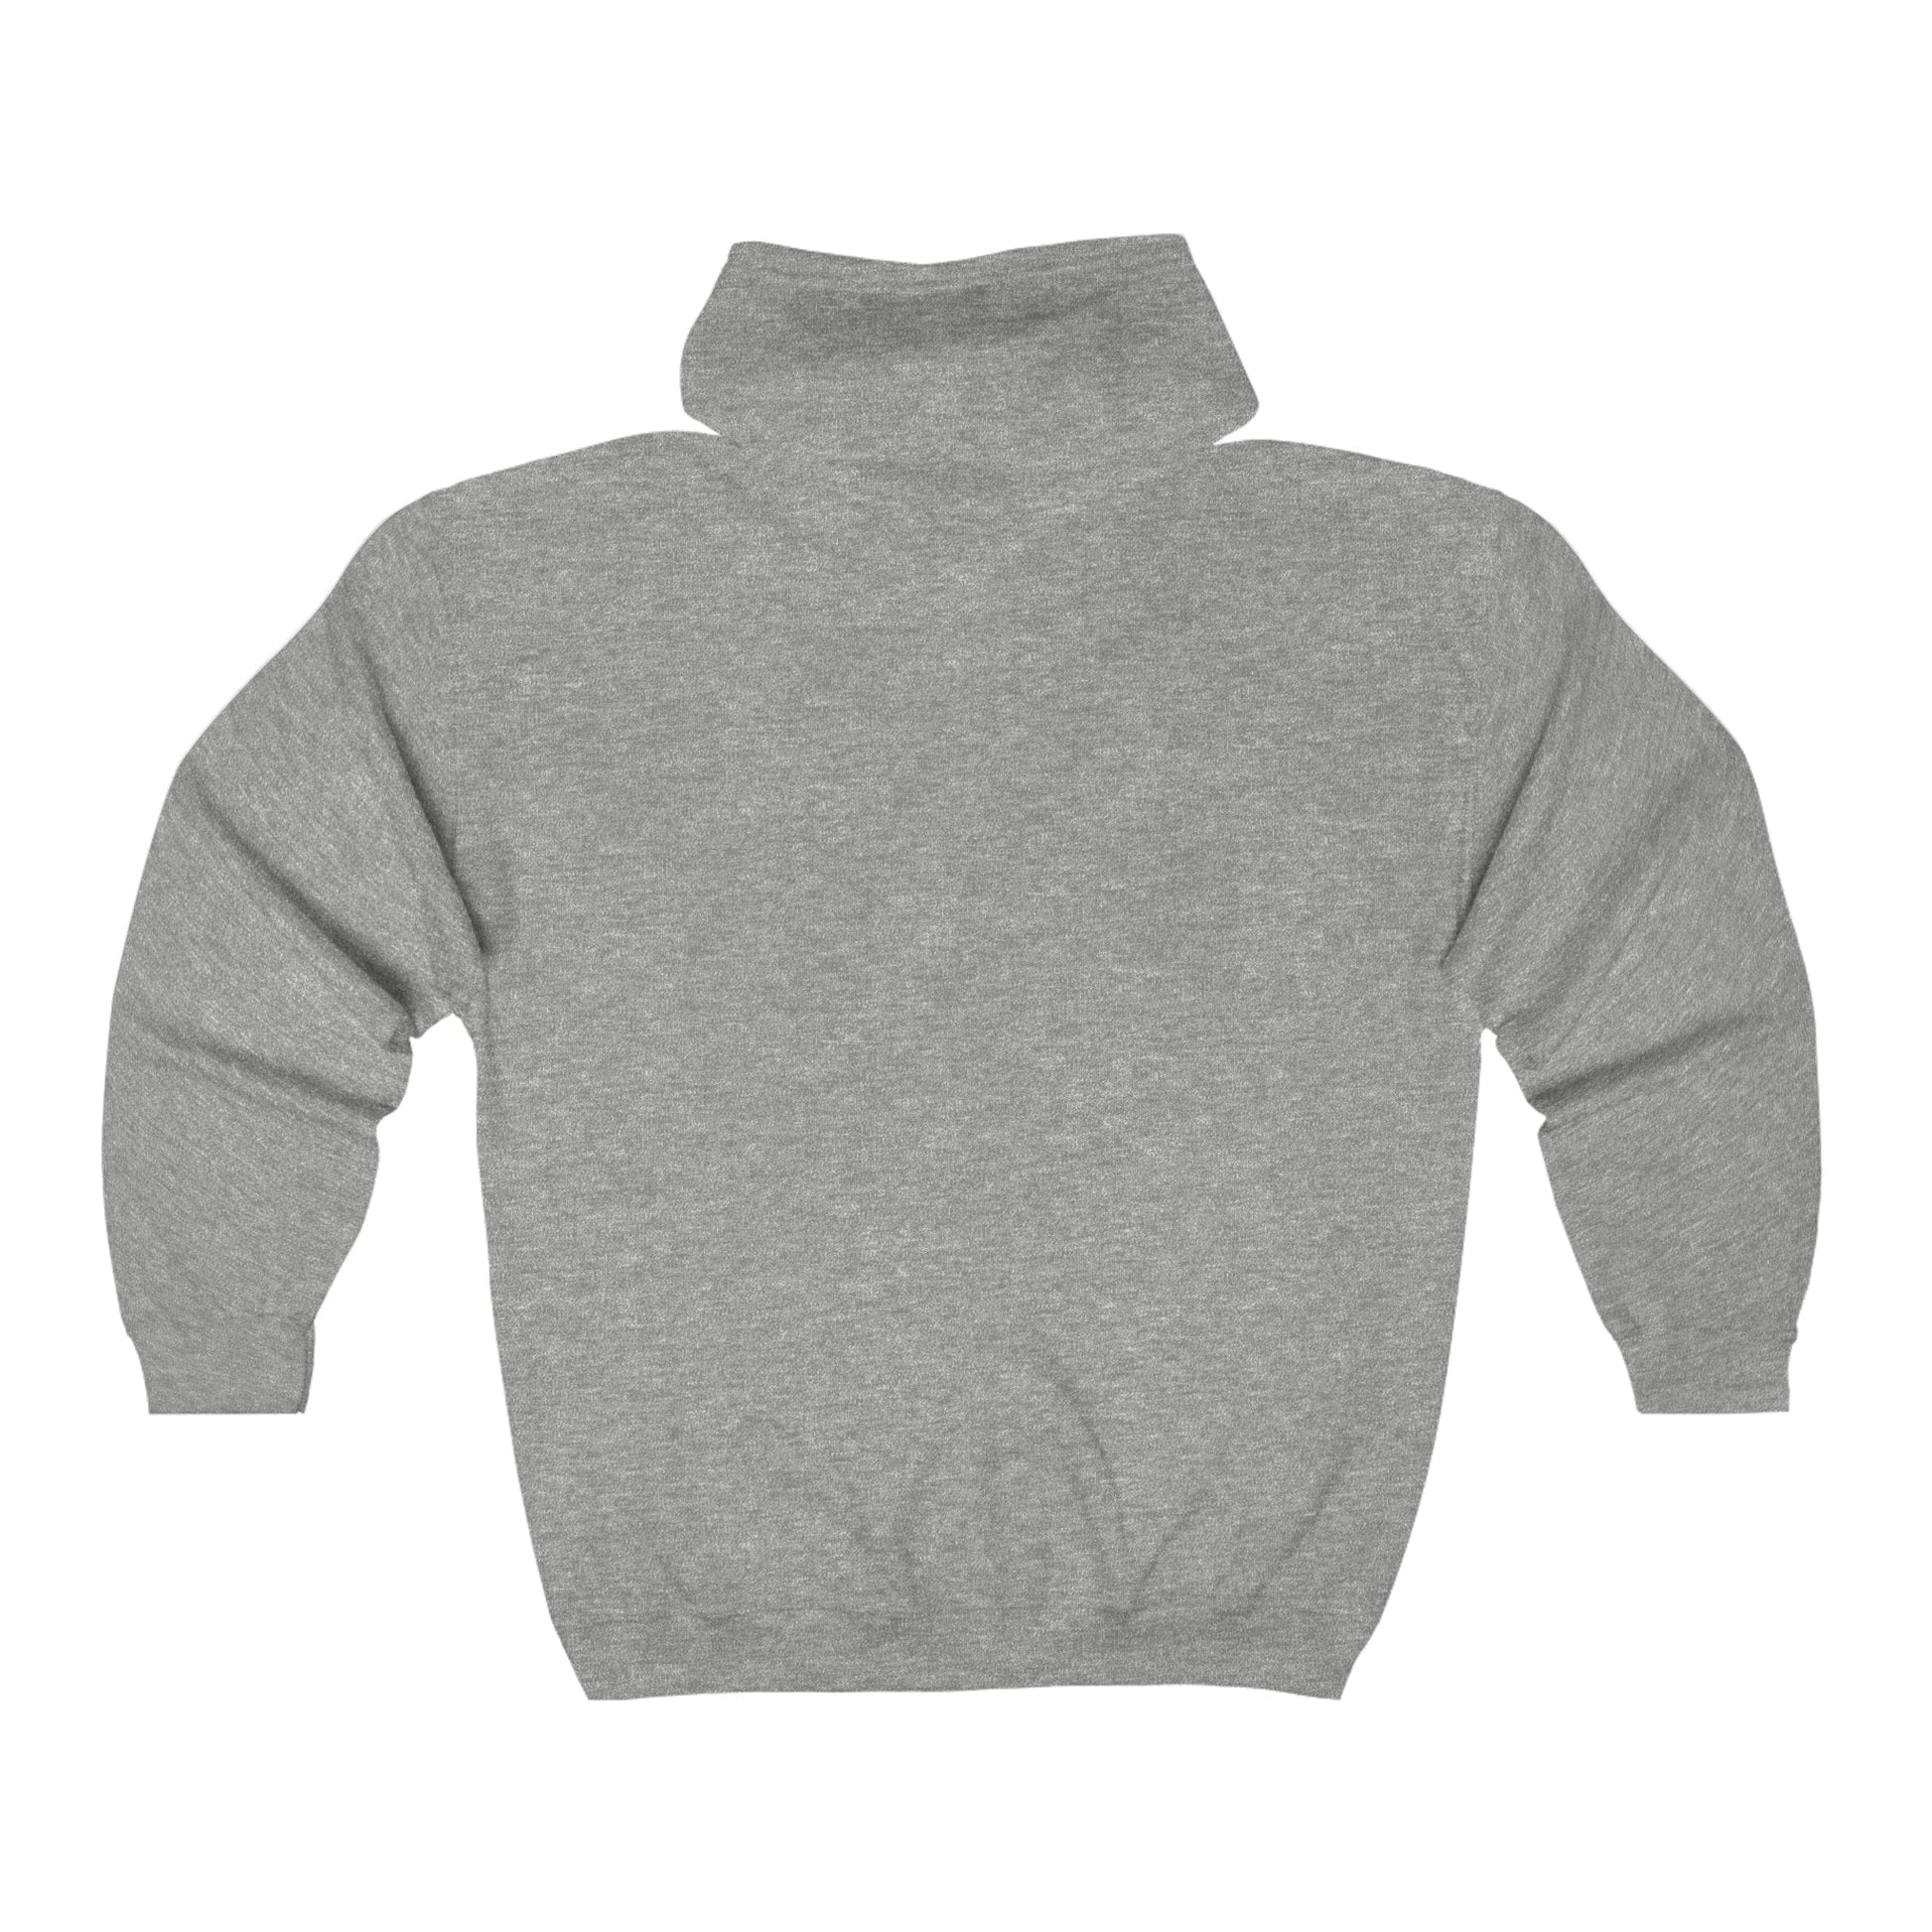 Pet Mom | Zip-up Sweatshirt - Detezi Designs-99949176156668245904